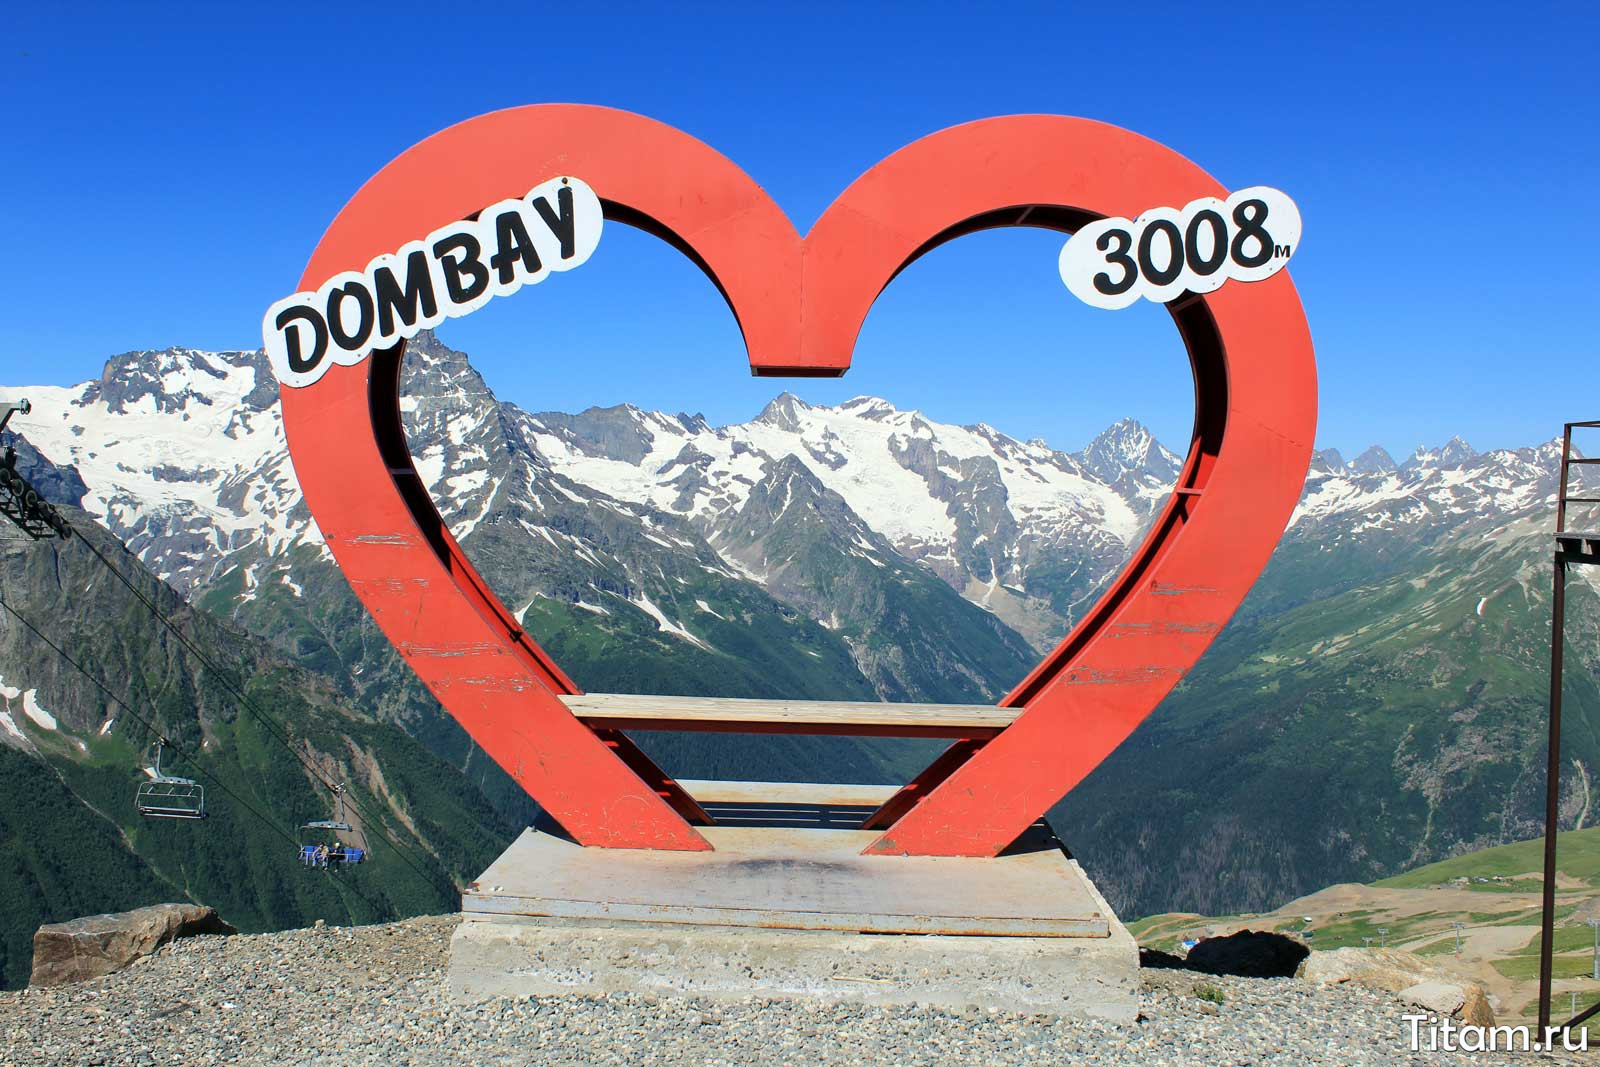 Dombay 3008